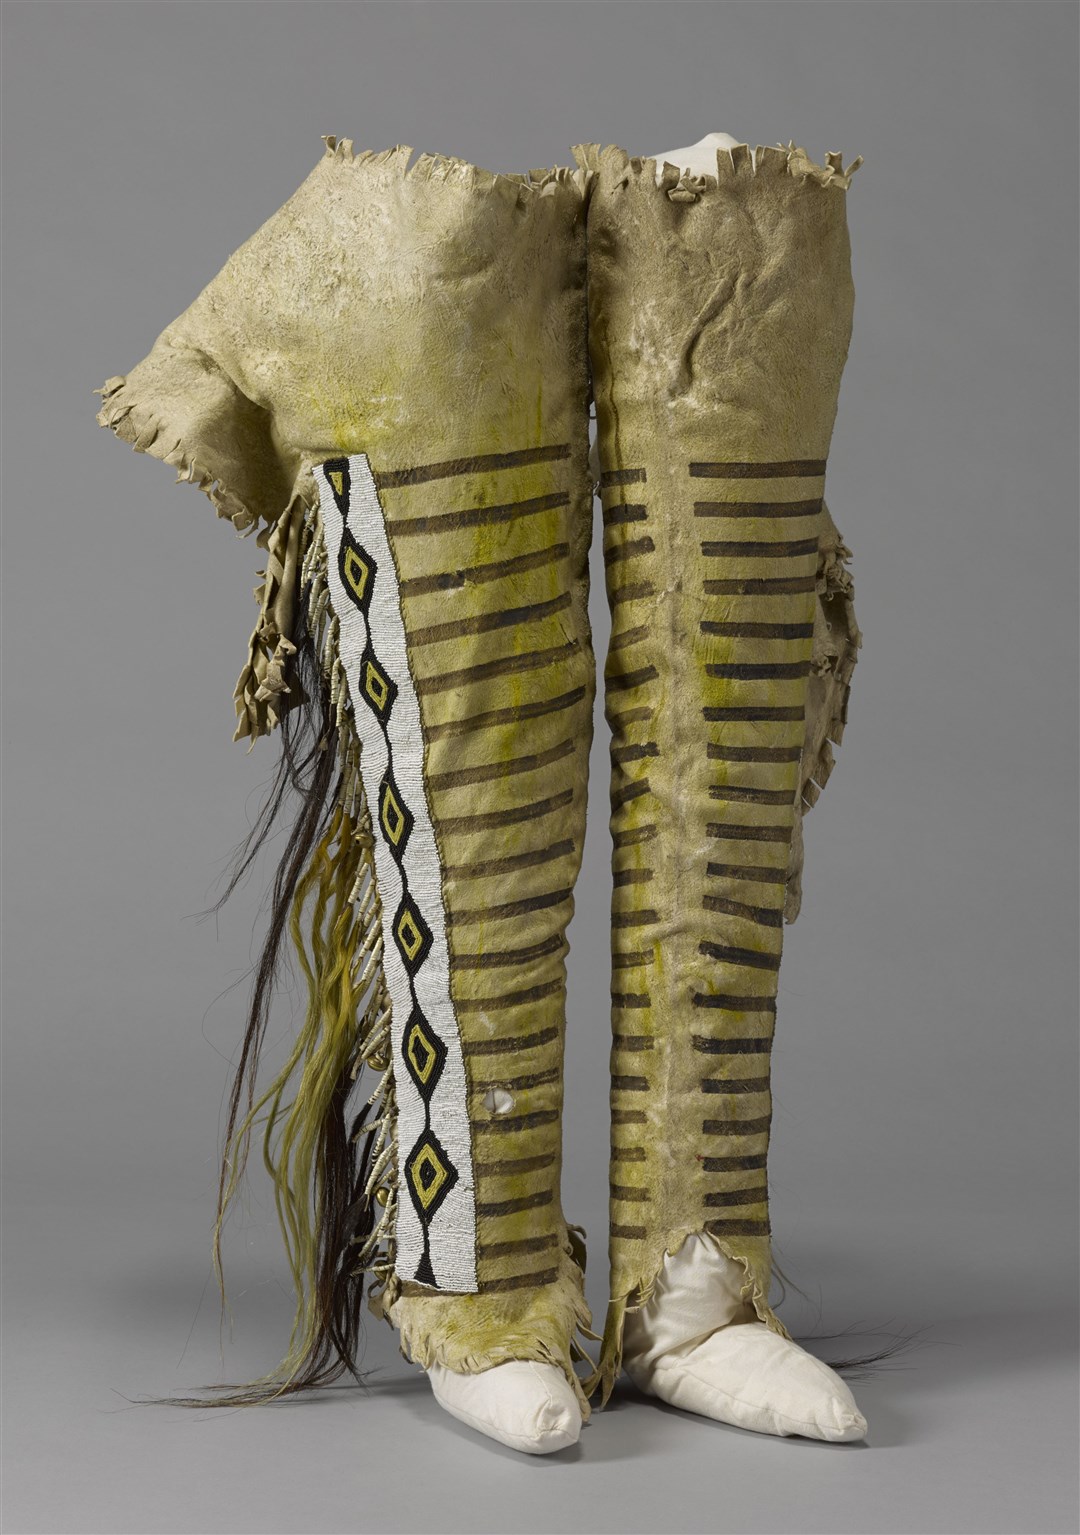 Chief Crowfoot’s Leggings (Royal Albert Memorial Museum/PA)